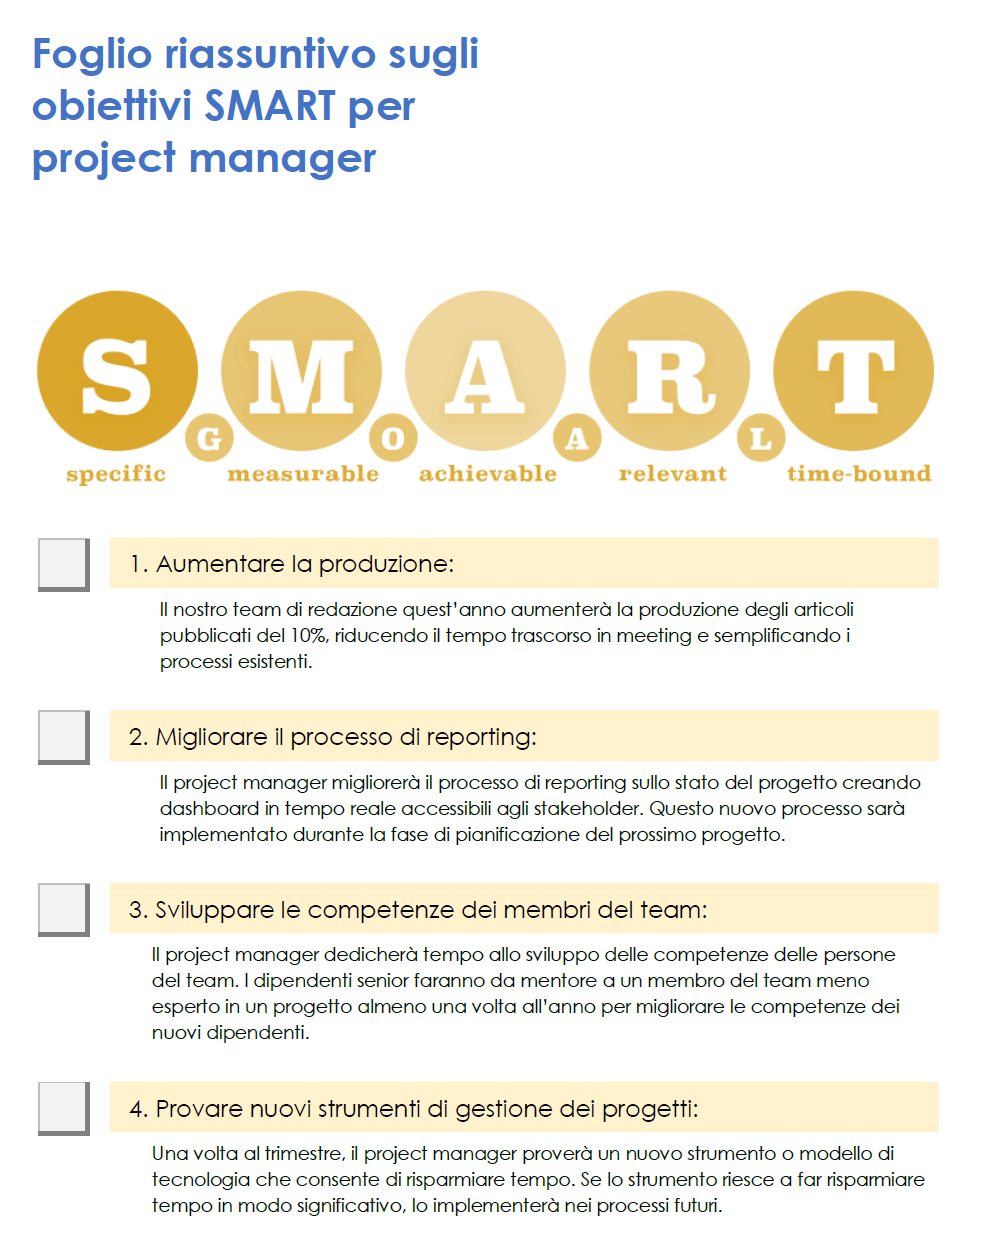  Modello di foglio informativo sugli obiettivi SMART per i project manager